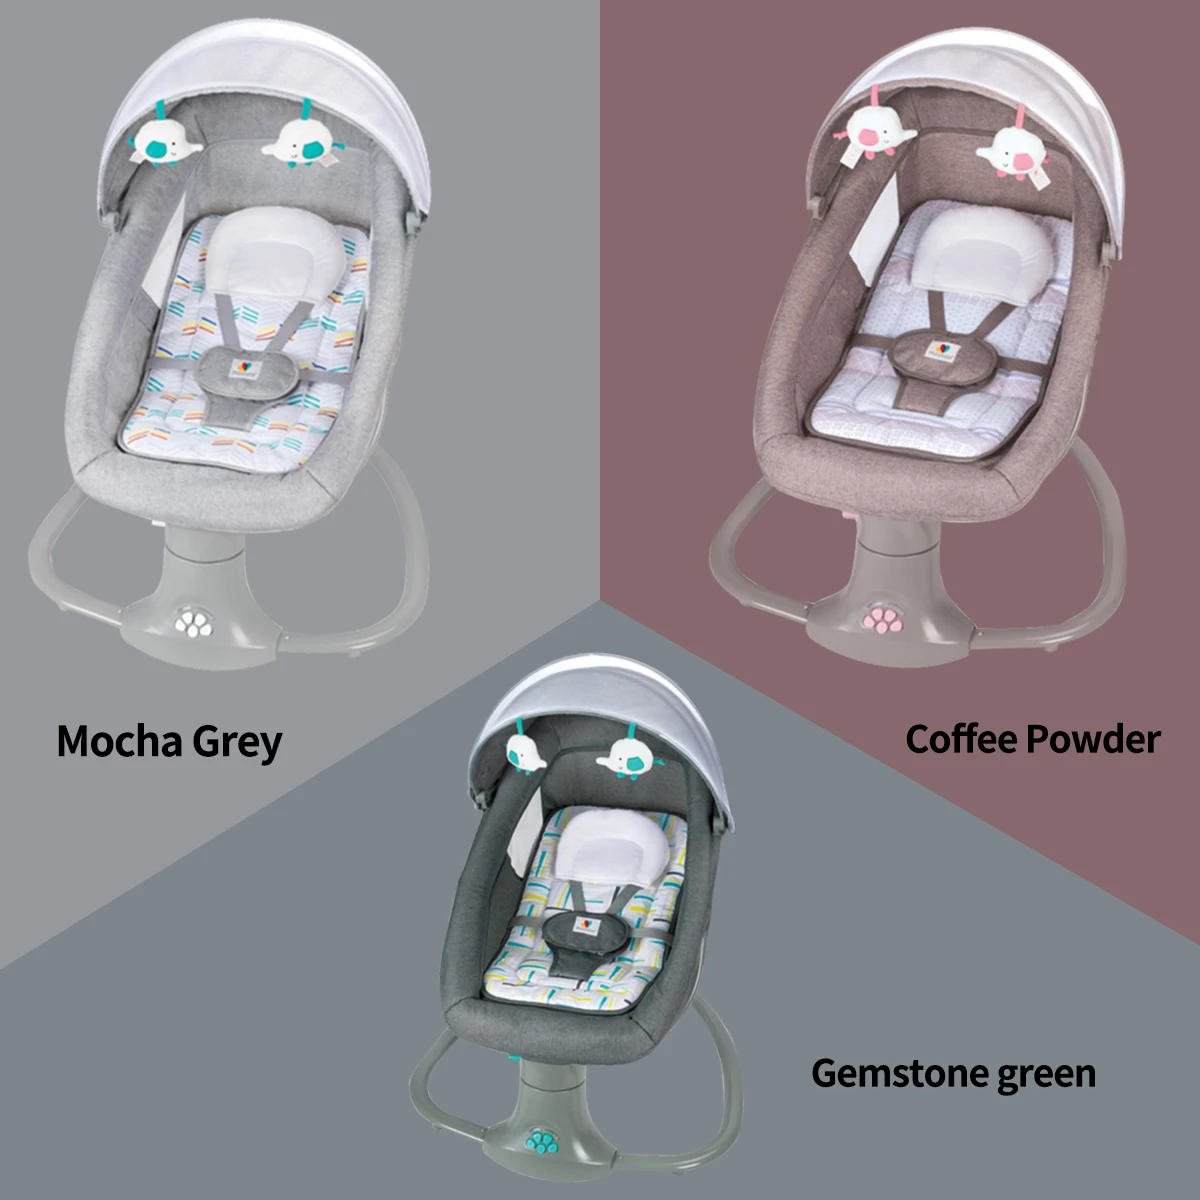 Multifuncional bebê cadeira de balanço, bebê espreguiçadeira, balanço  elétrico ajustável, berço Bluetooth inteligente, recém-nascido, 3 em 1 -  AliExpress